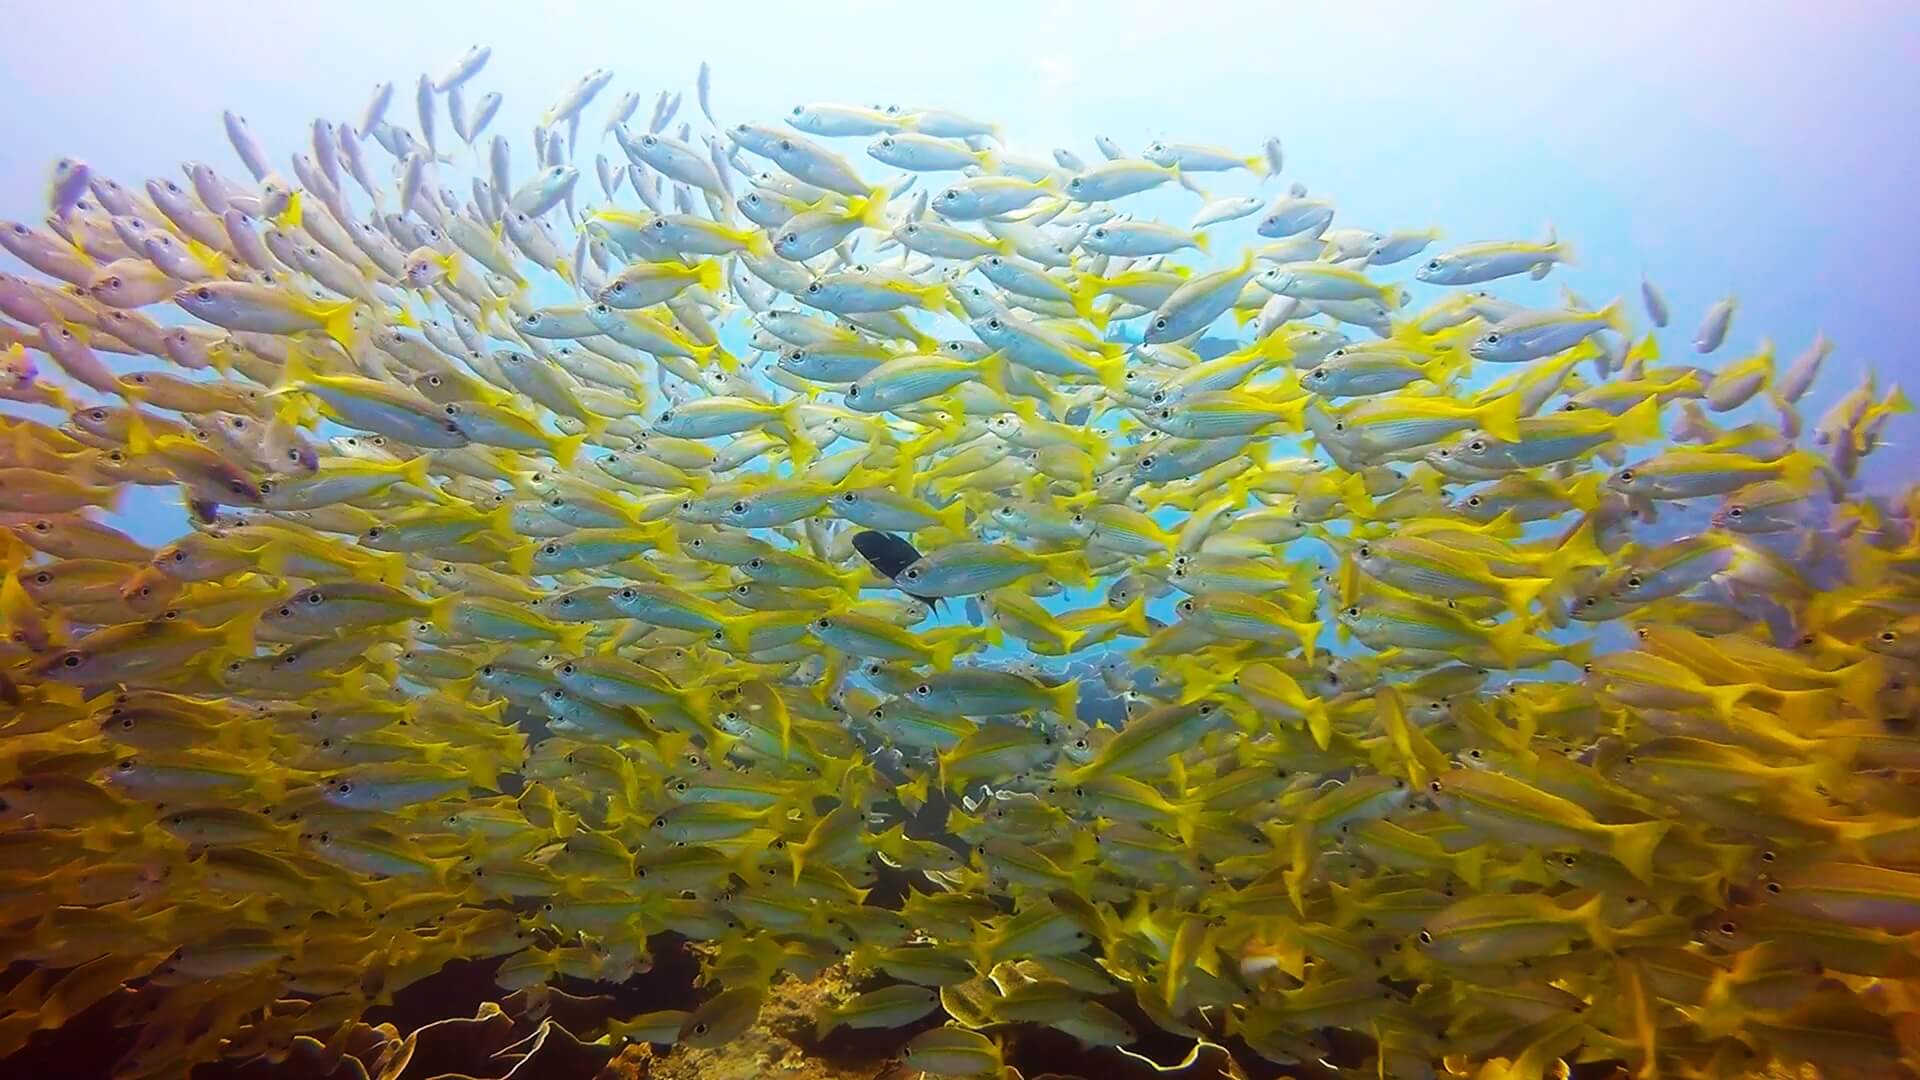 キンセンフエダイの群れの水中写真画像